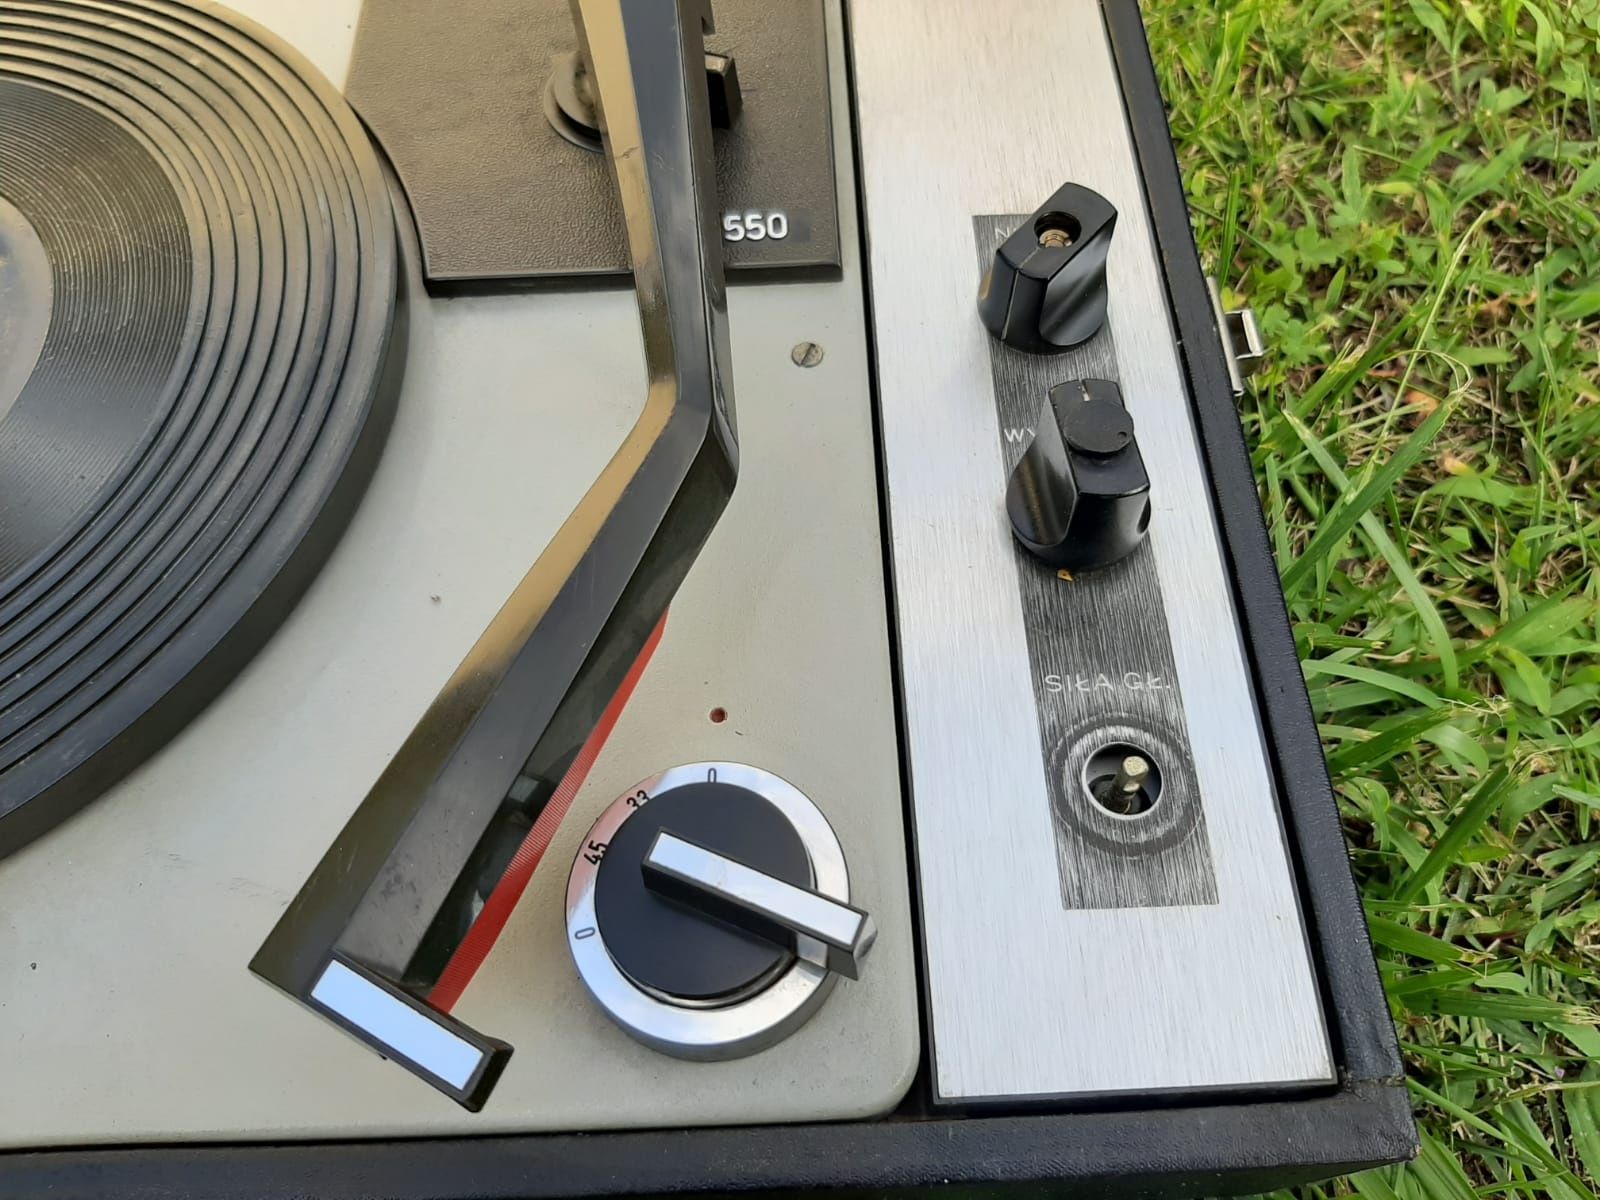 Zabytkowy gramofon walizkowy Unitra Fonica WG550